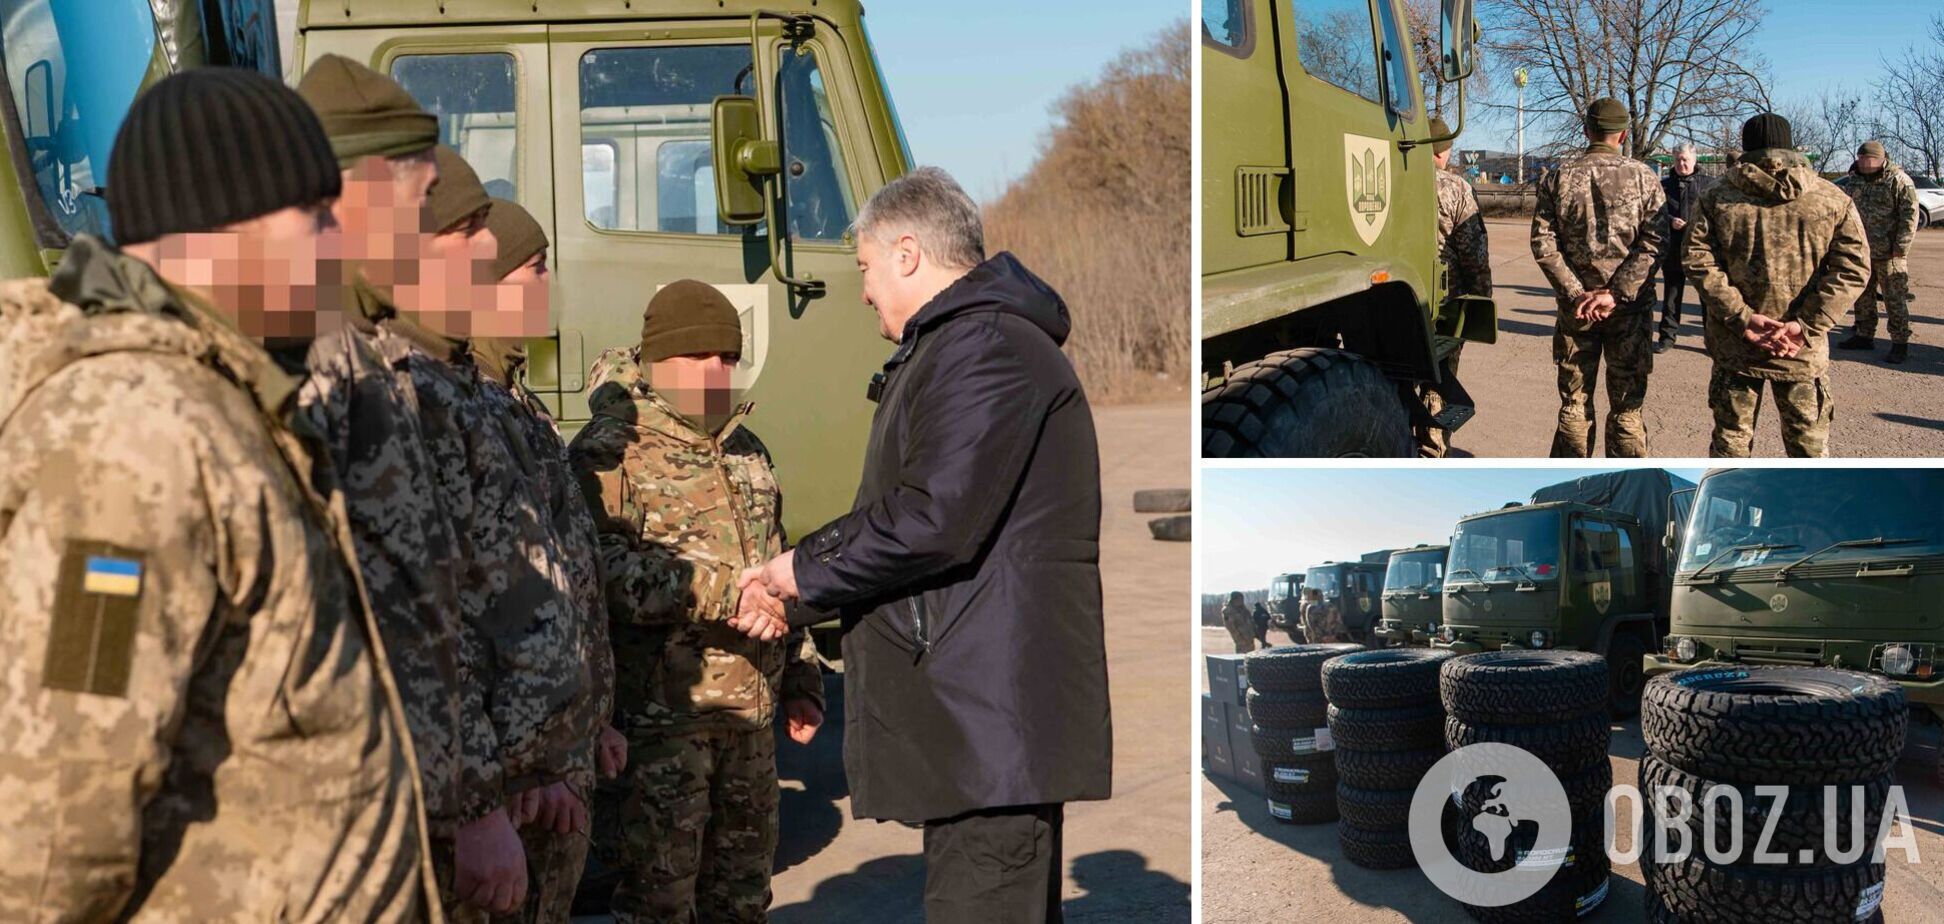 Бригада морской пехоты получила грузовики и 'старлинки' от Порошенко